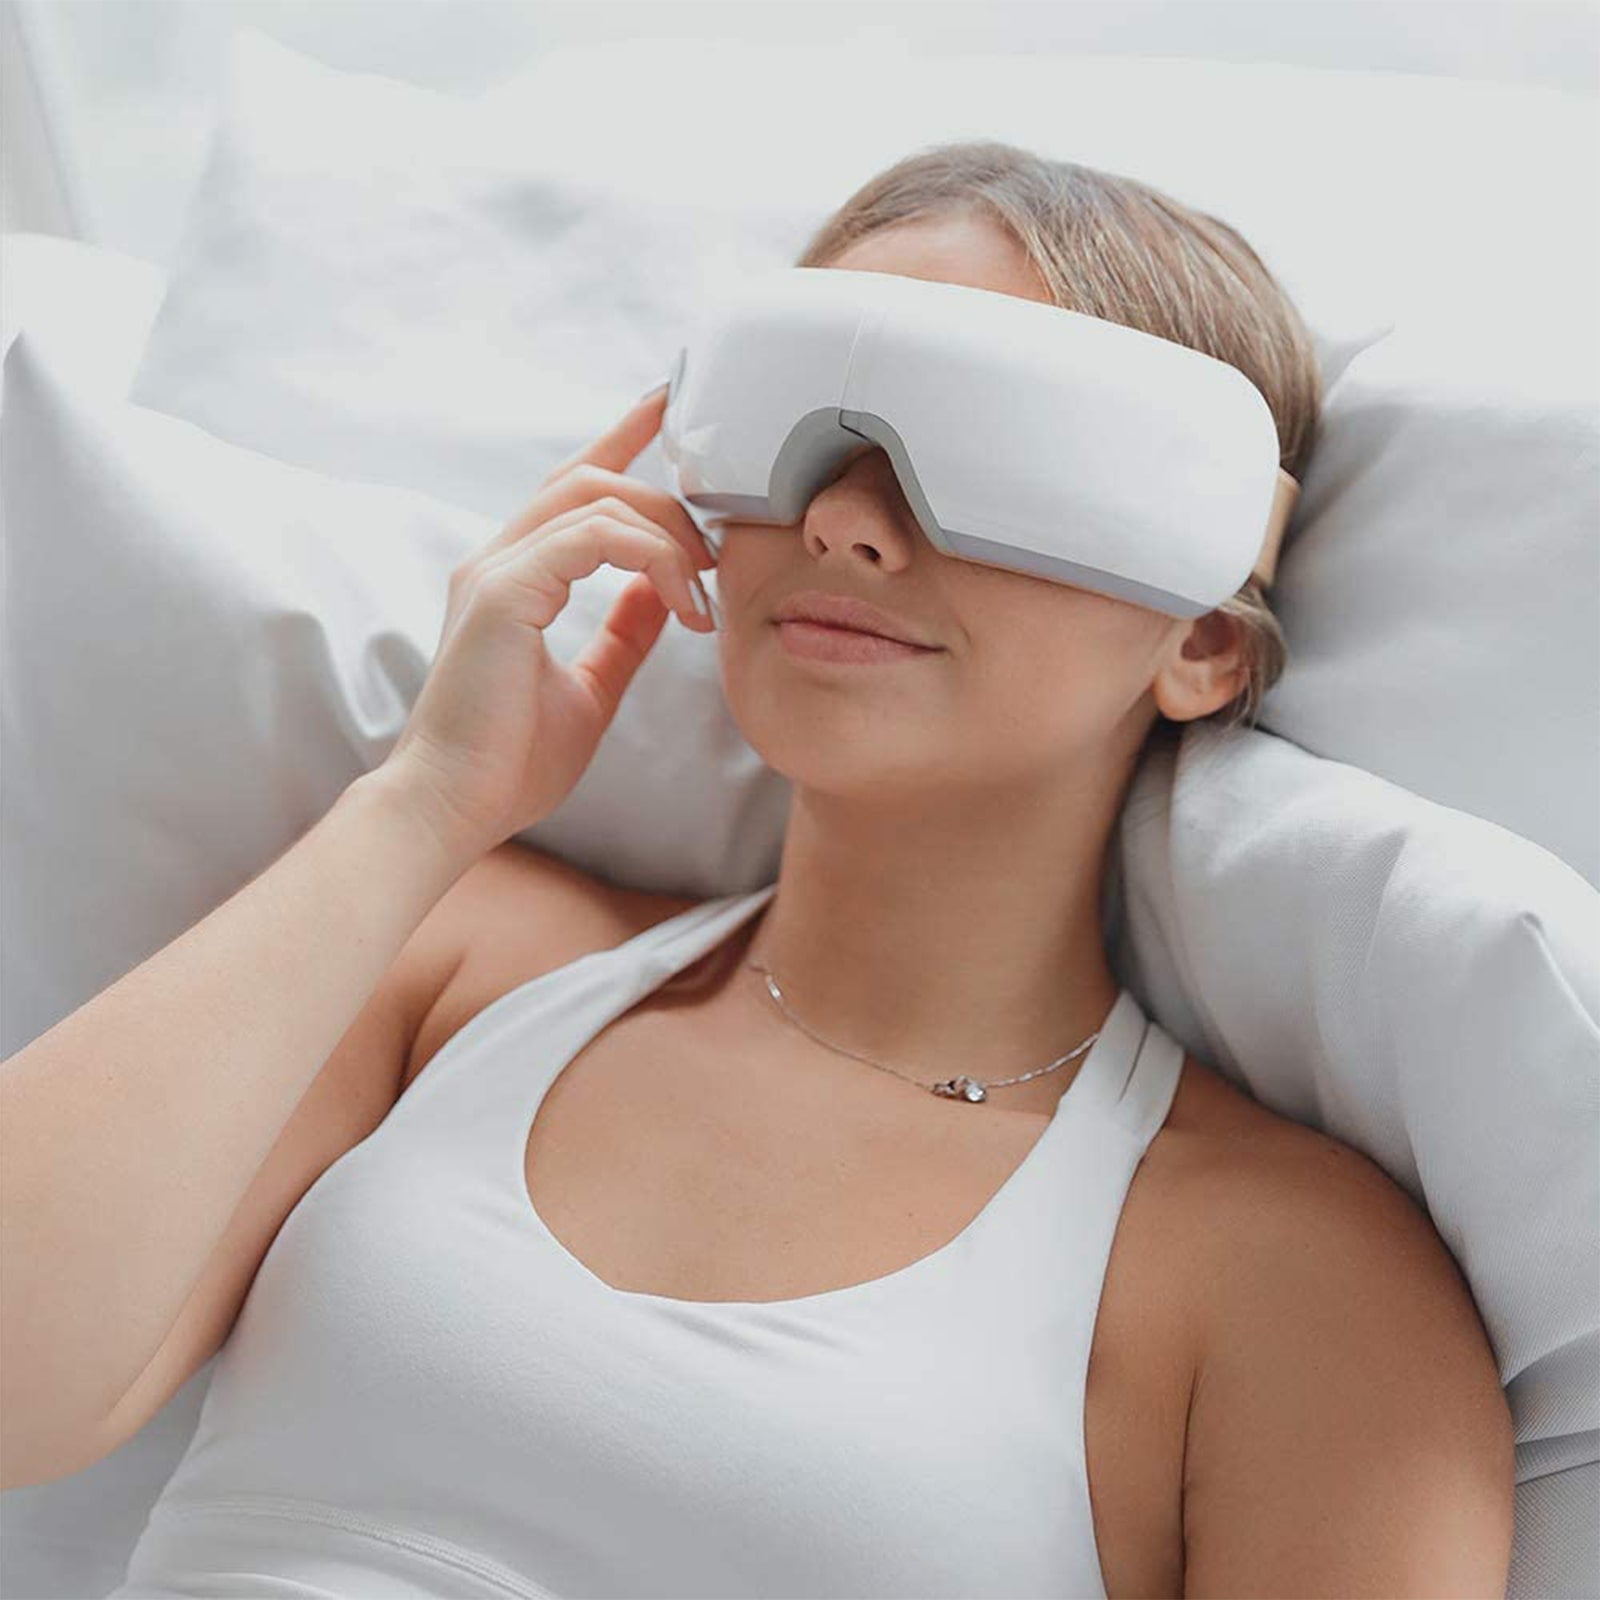 Smart Eye Massager with Heat & Bluetooth – Deep Tissue Massage Guns